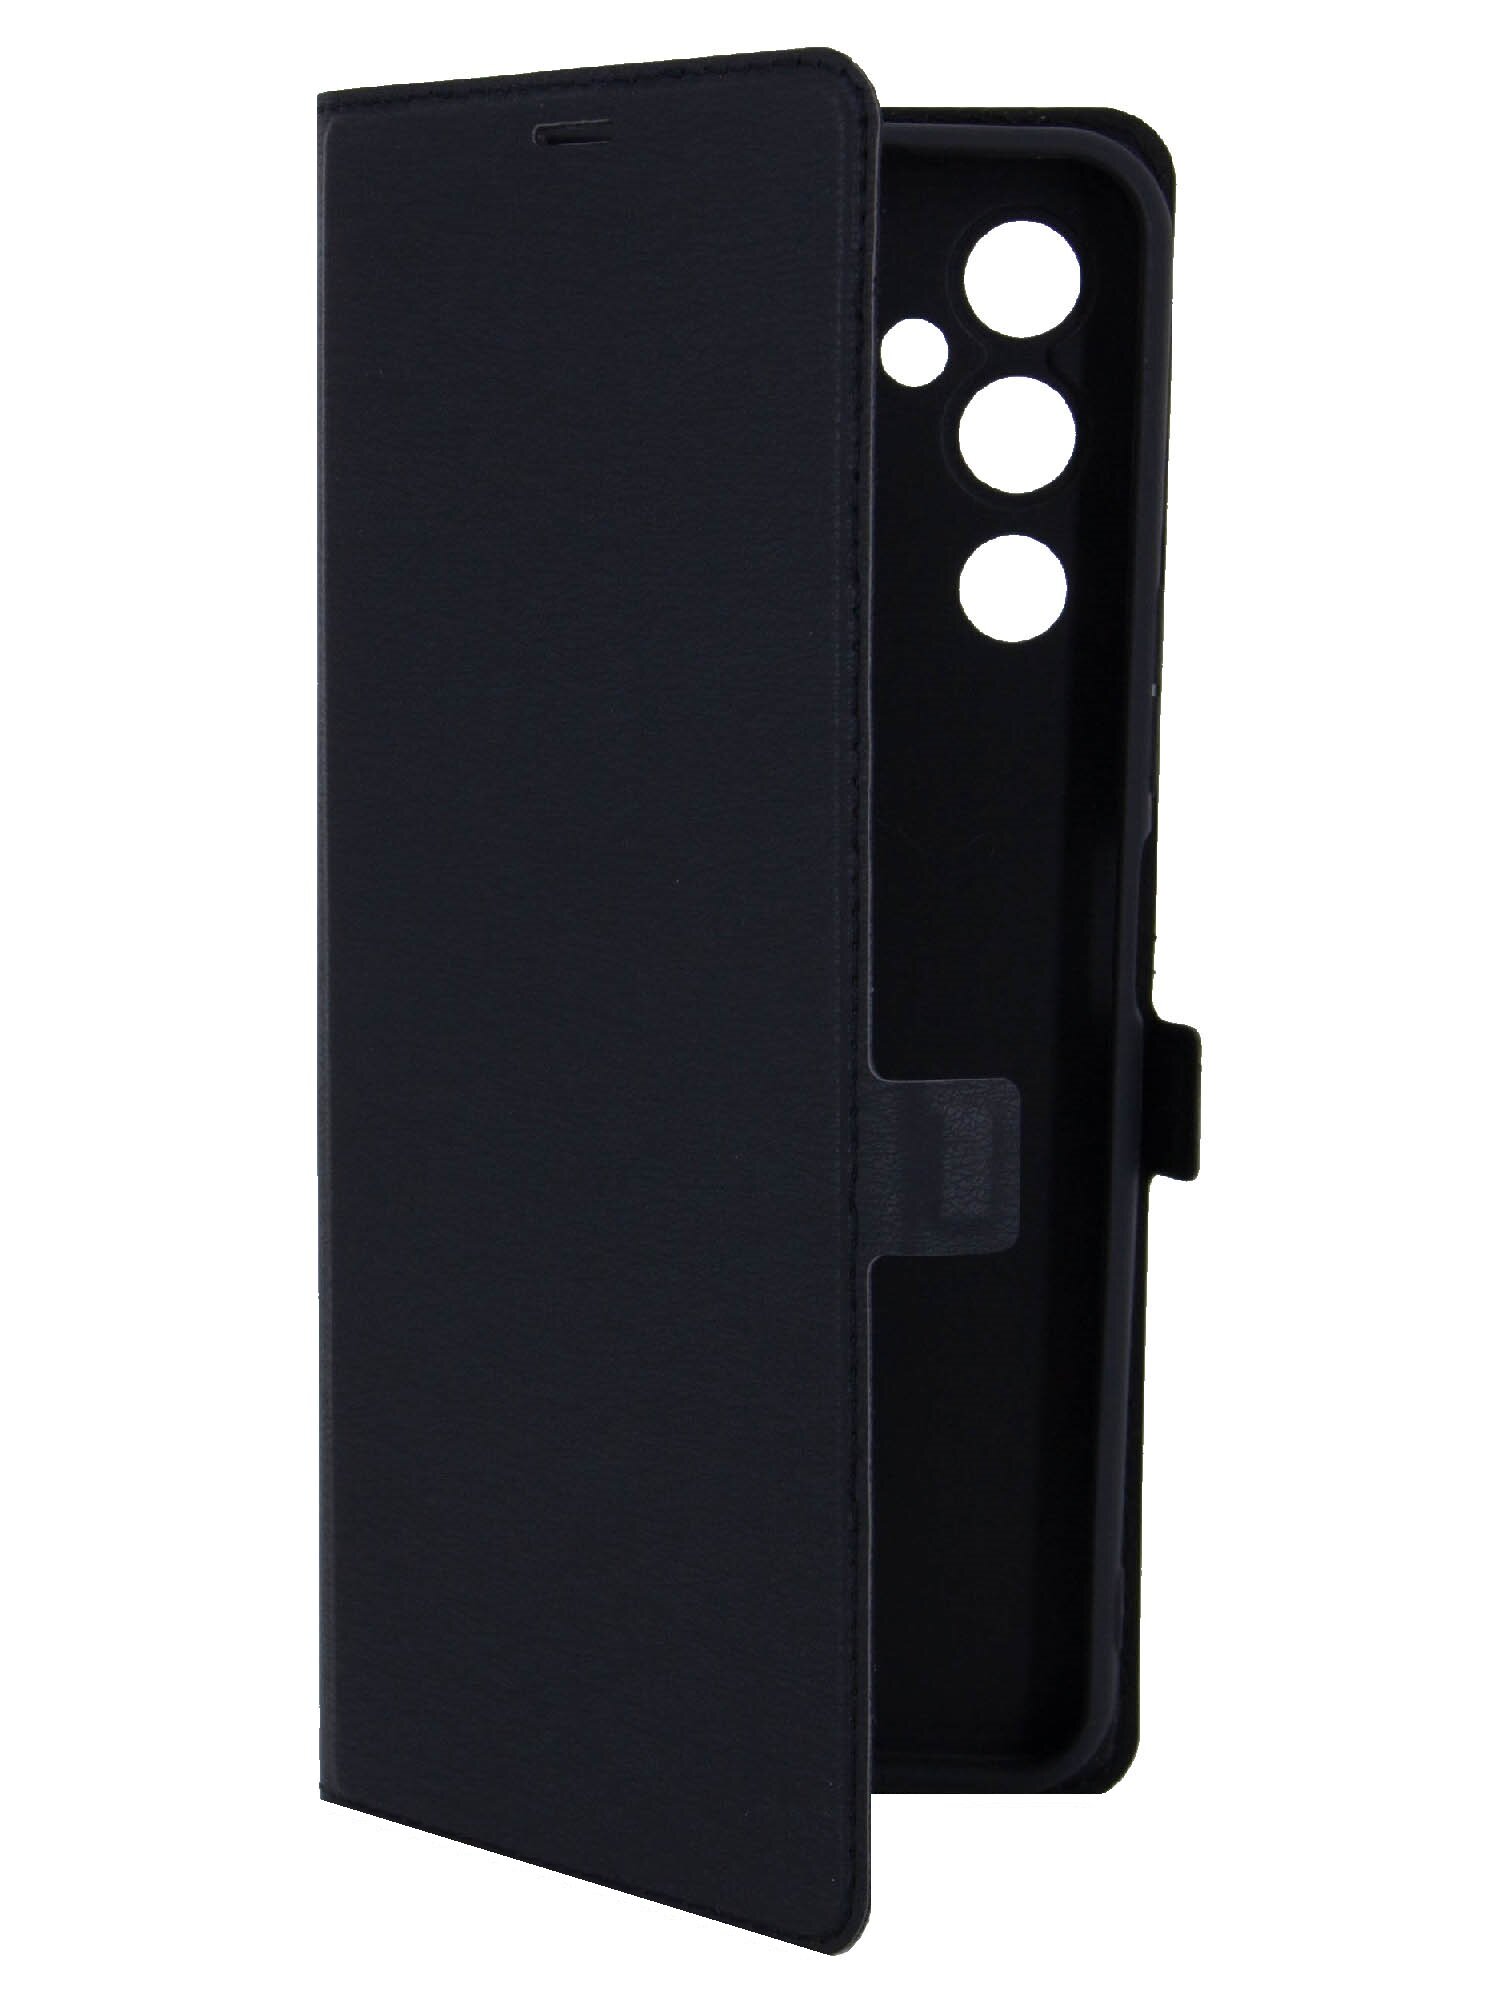 Чехол на Tecno Pova 4 (Техно Пова 4 ) черный чехол книжка эко-кожа с функцией подставки отделением для карт и магнитами Book case Miuko